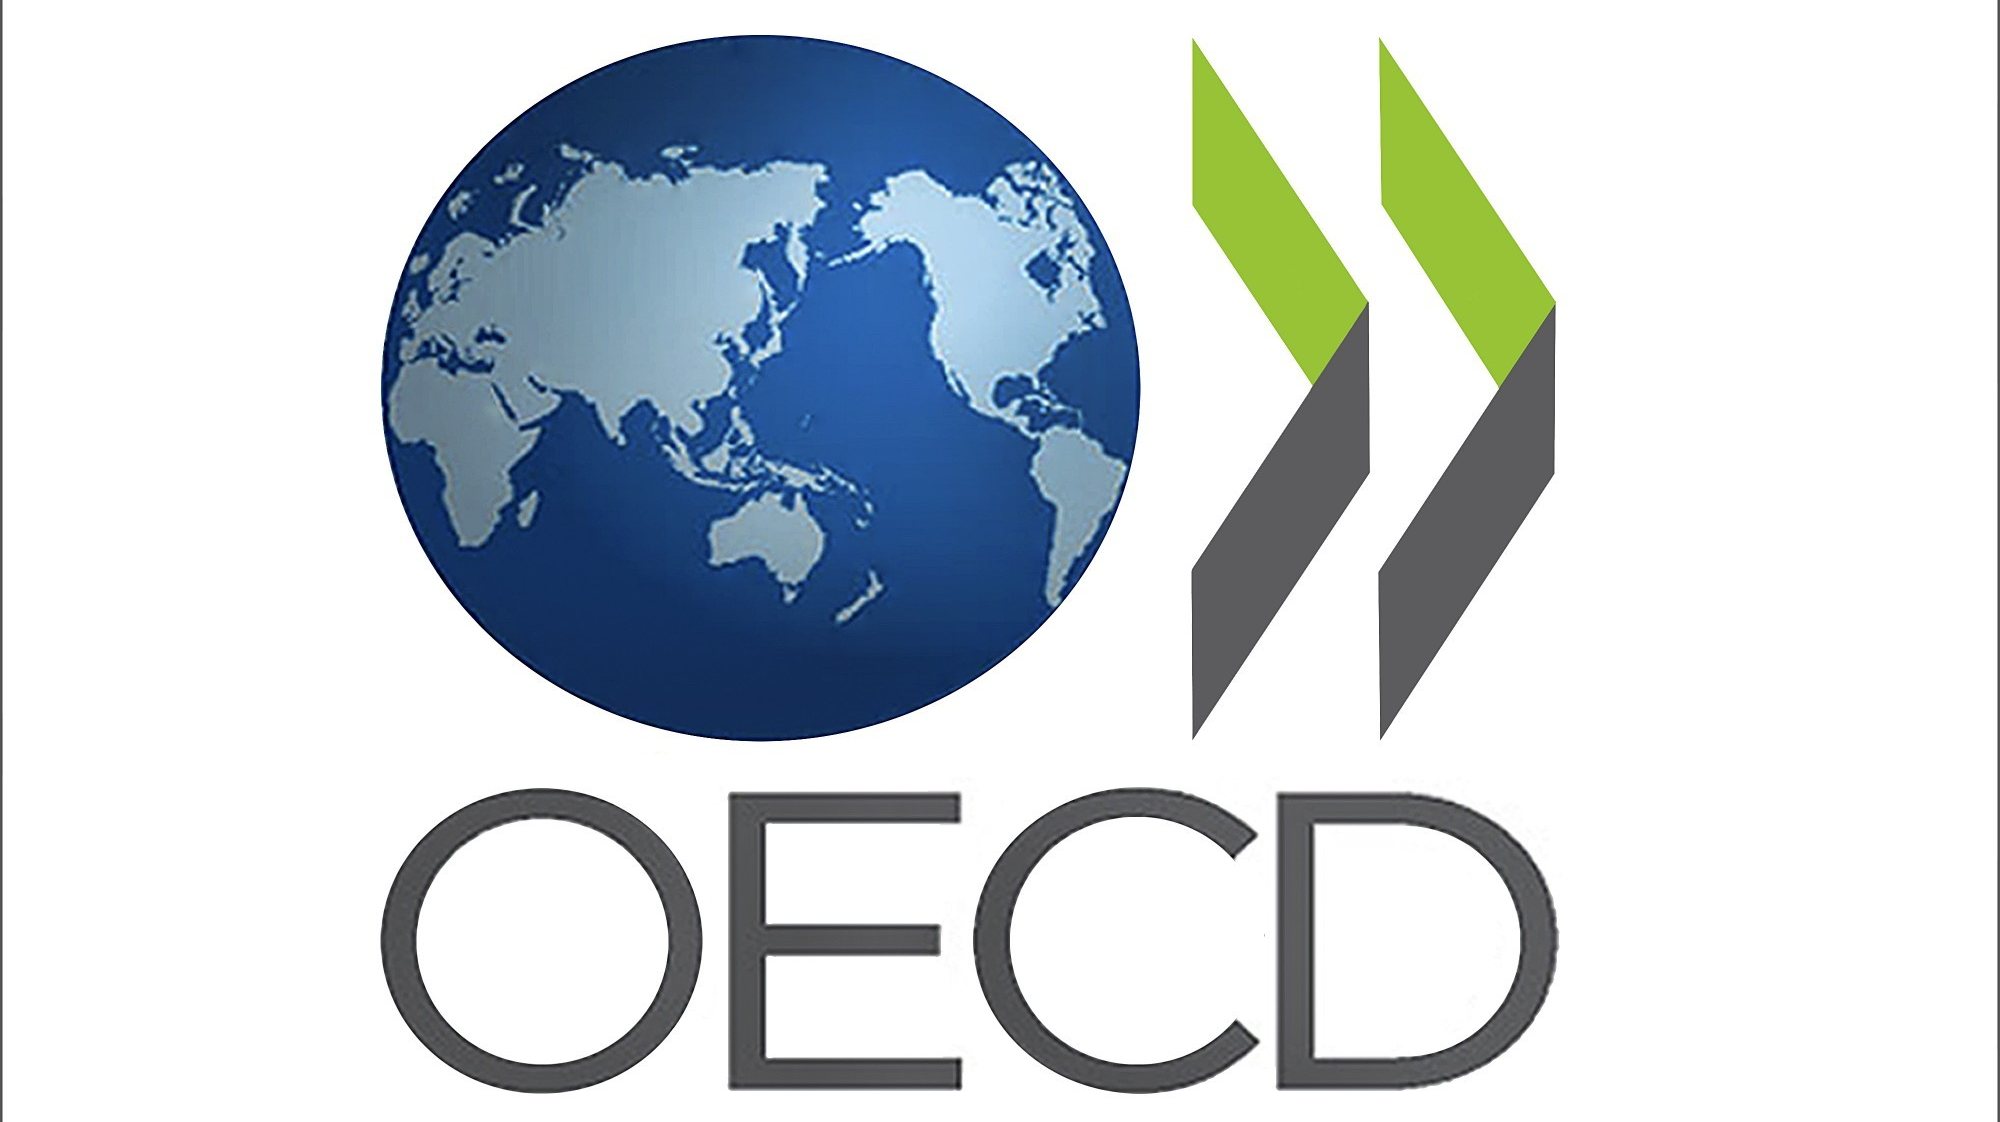 Organisation for Economic Co-operation and Development - Organização para a Cooperação e Desenvolvimento Económico